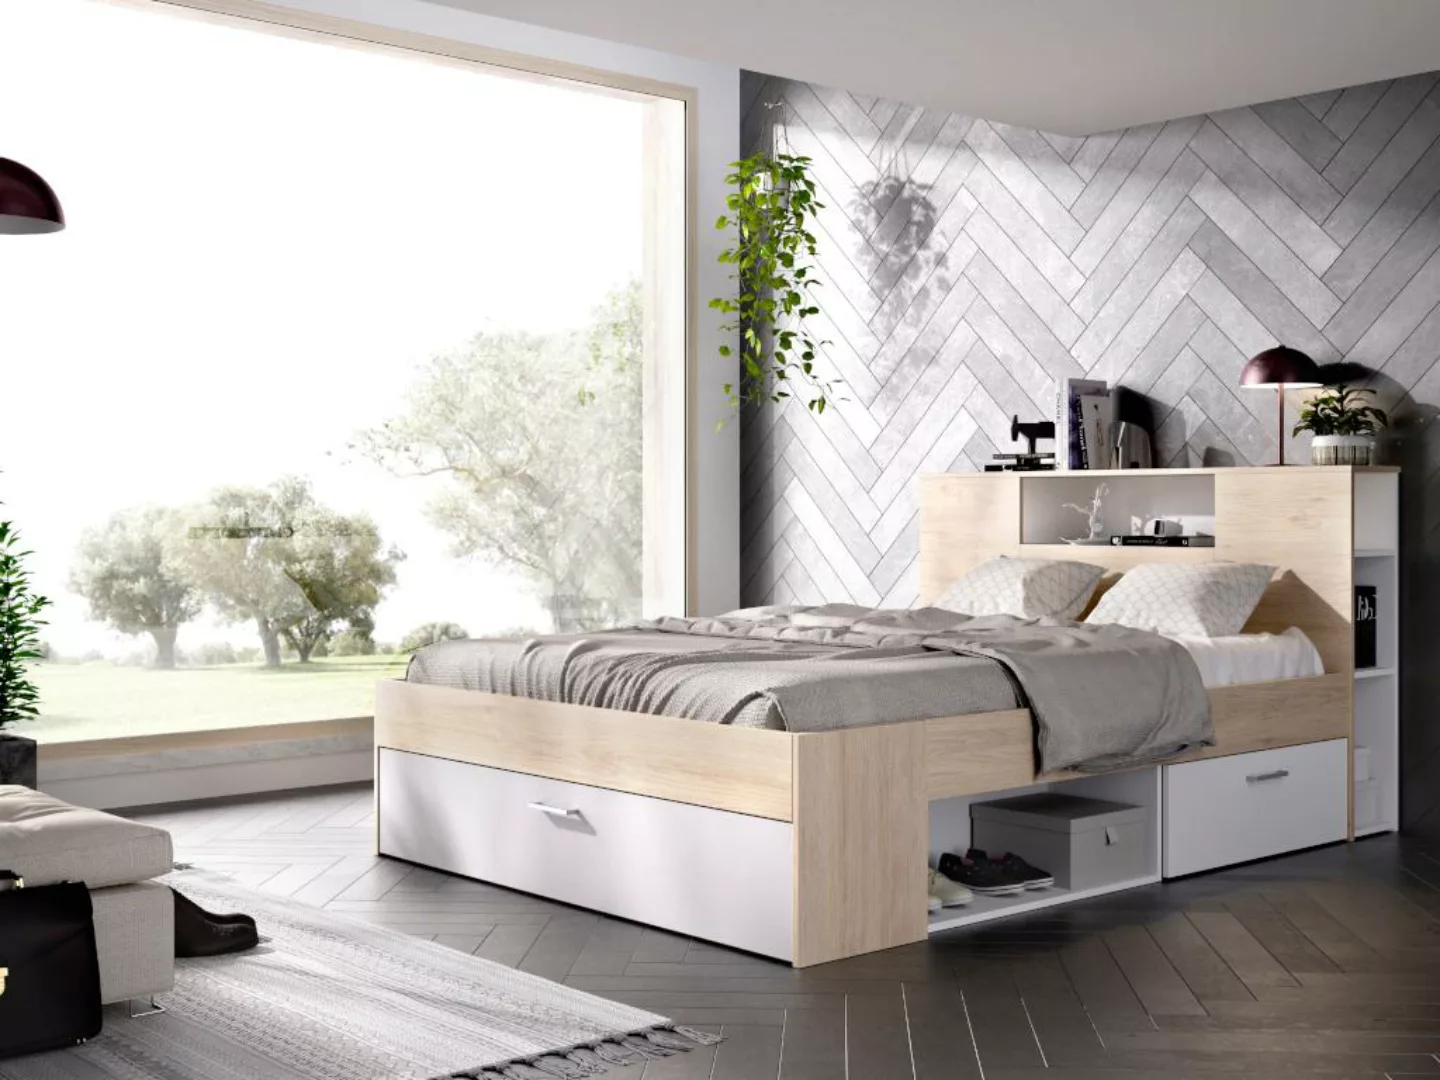 Bett mit Stauraum & Schubladen - 160 x 200 cm - Weiß & Naturfarben - LEANDR günstig online kaufen